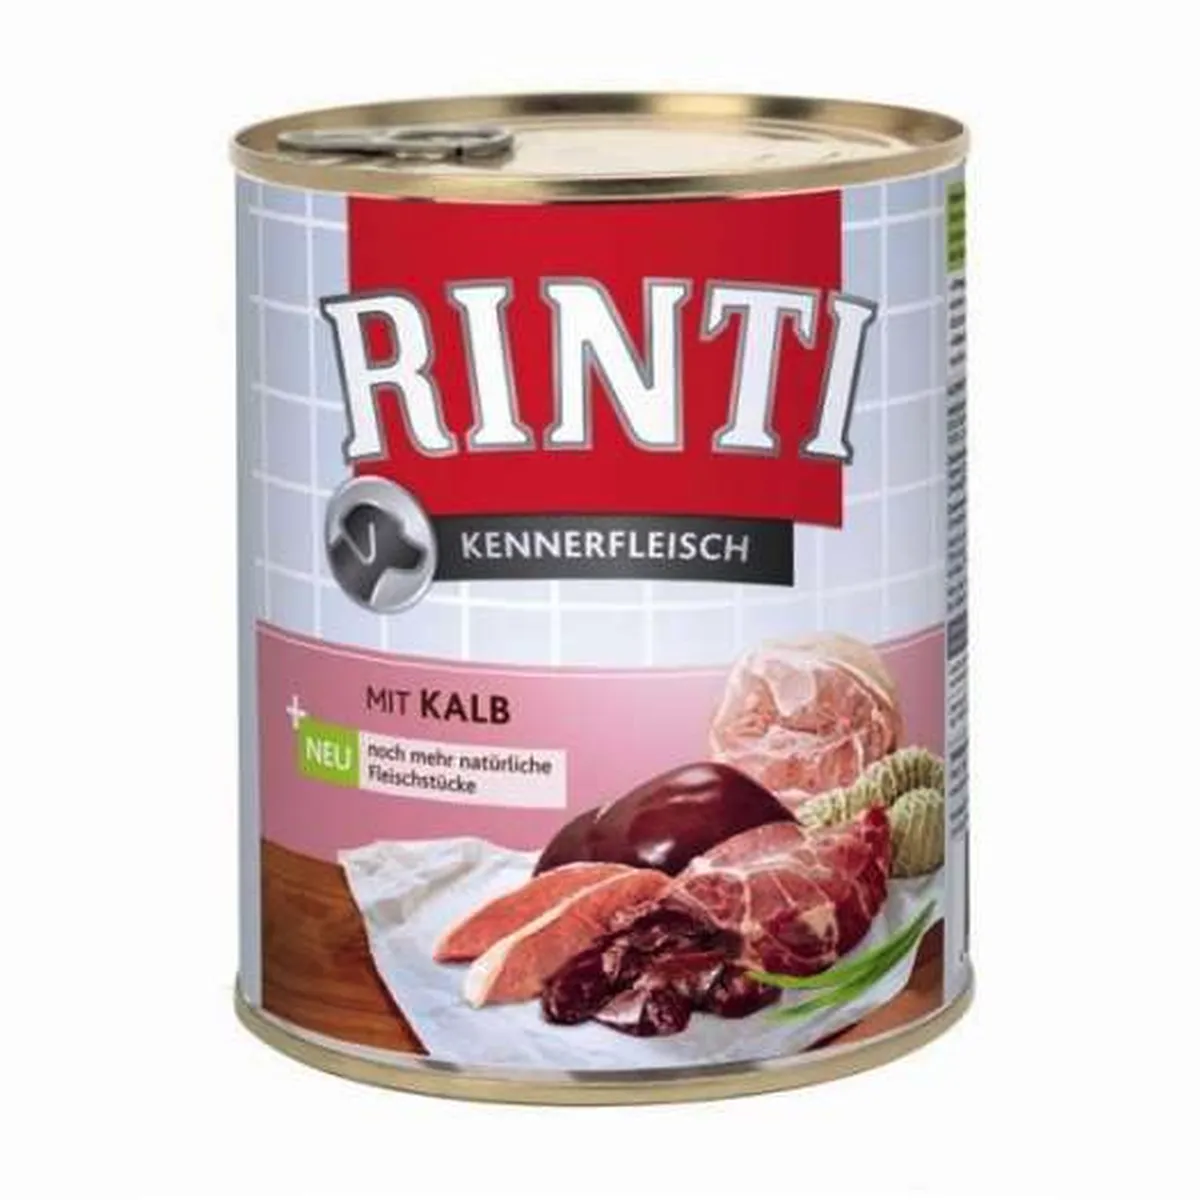 Rinti Kennerfleisch Kalb – 800 g (12er-Pack)